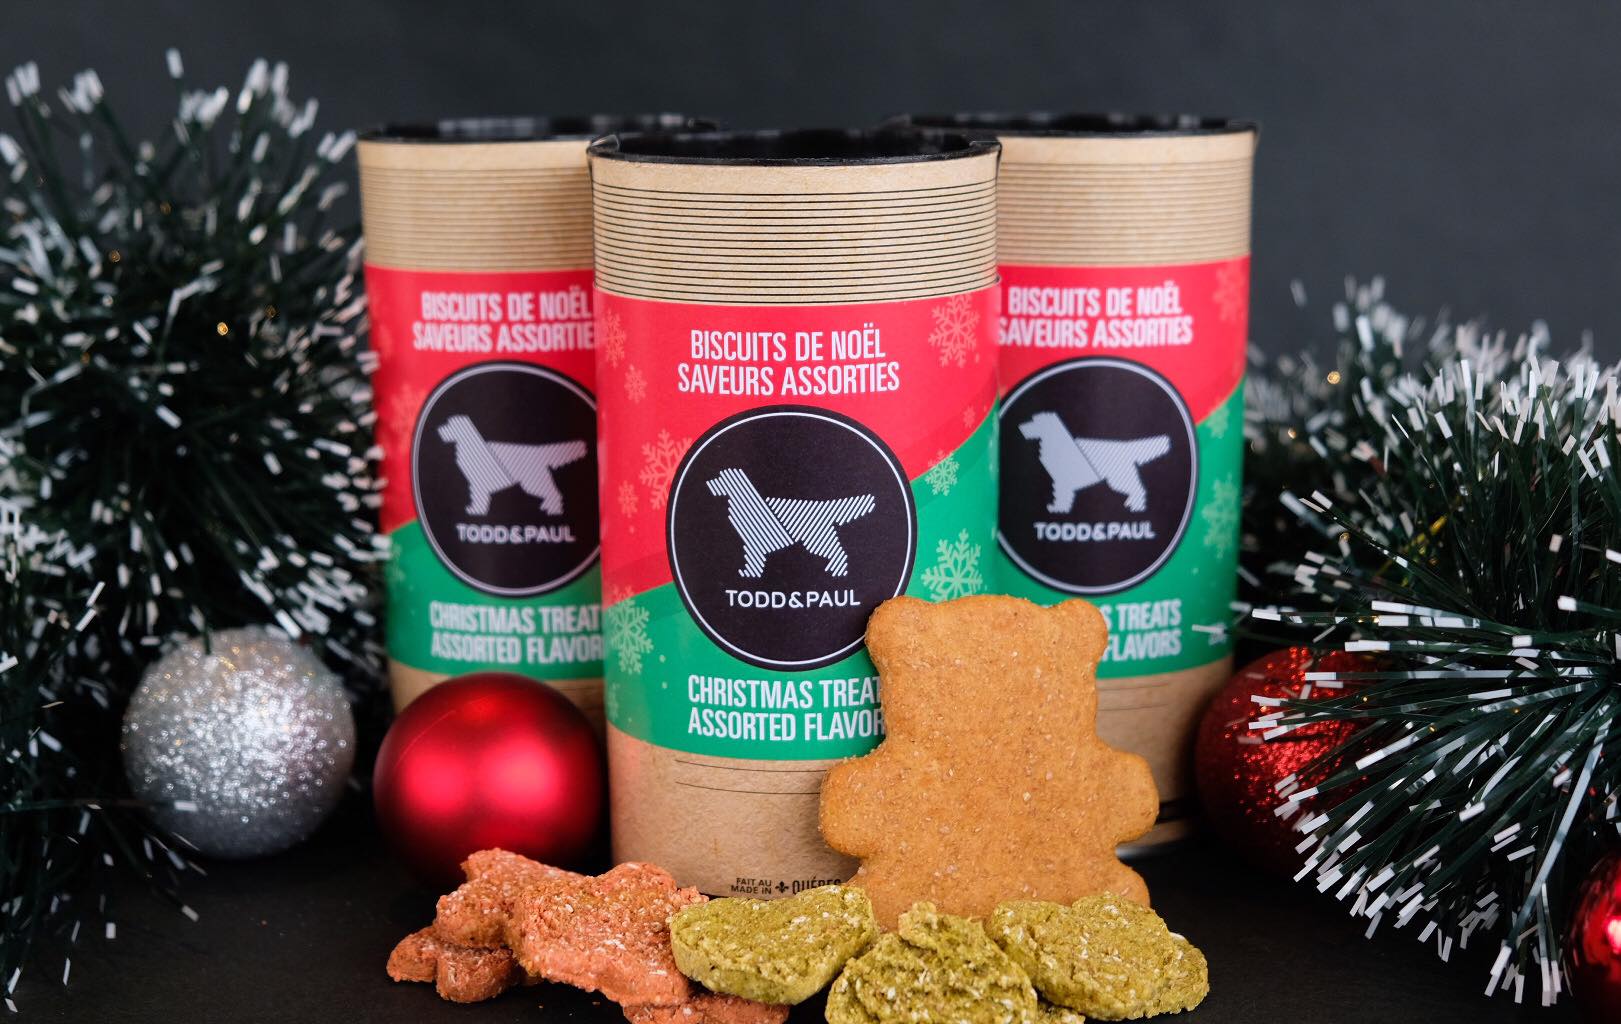 Todd & Paul Gâteries Biscuits pour chiens Assortis de Noël - Produits Québécois